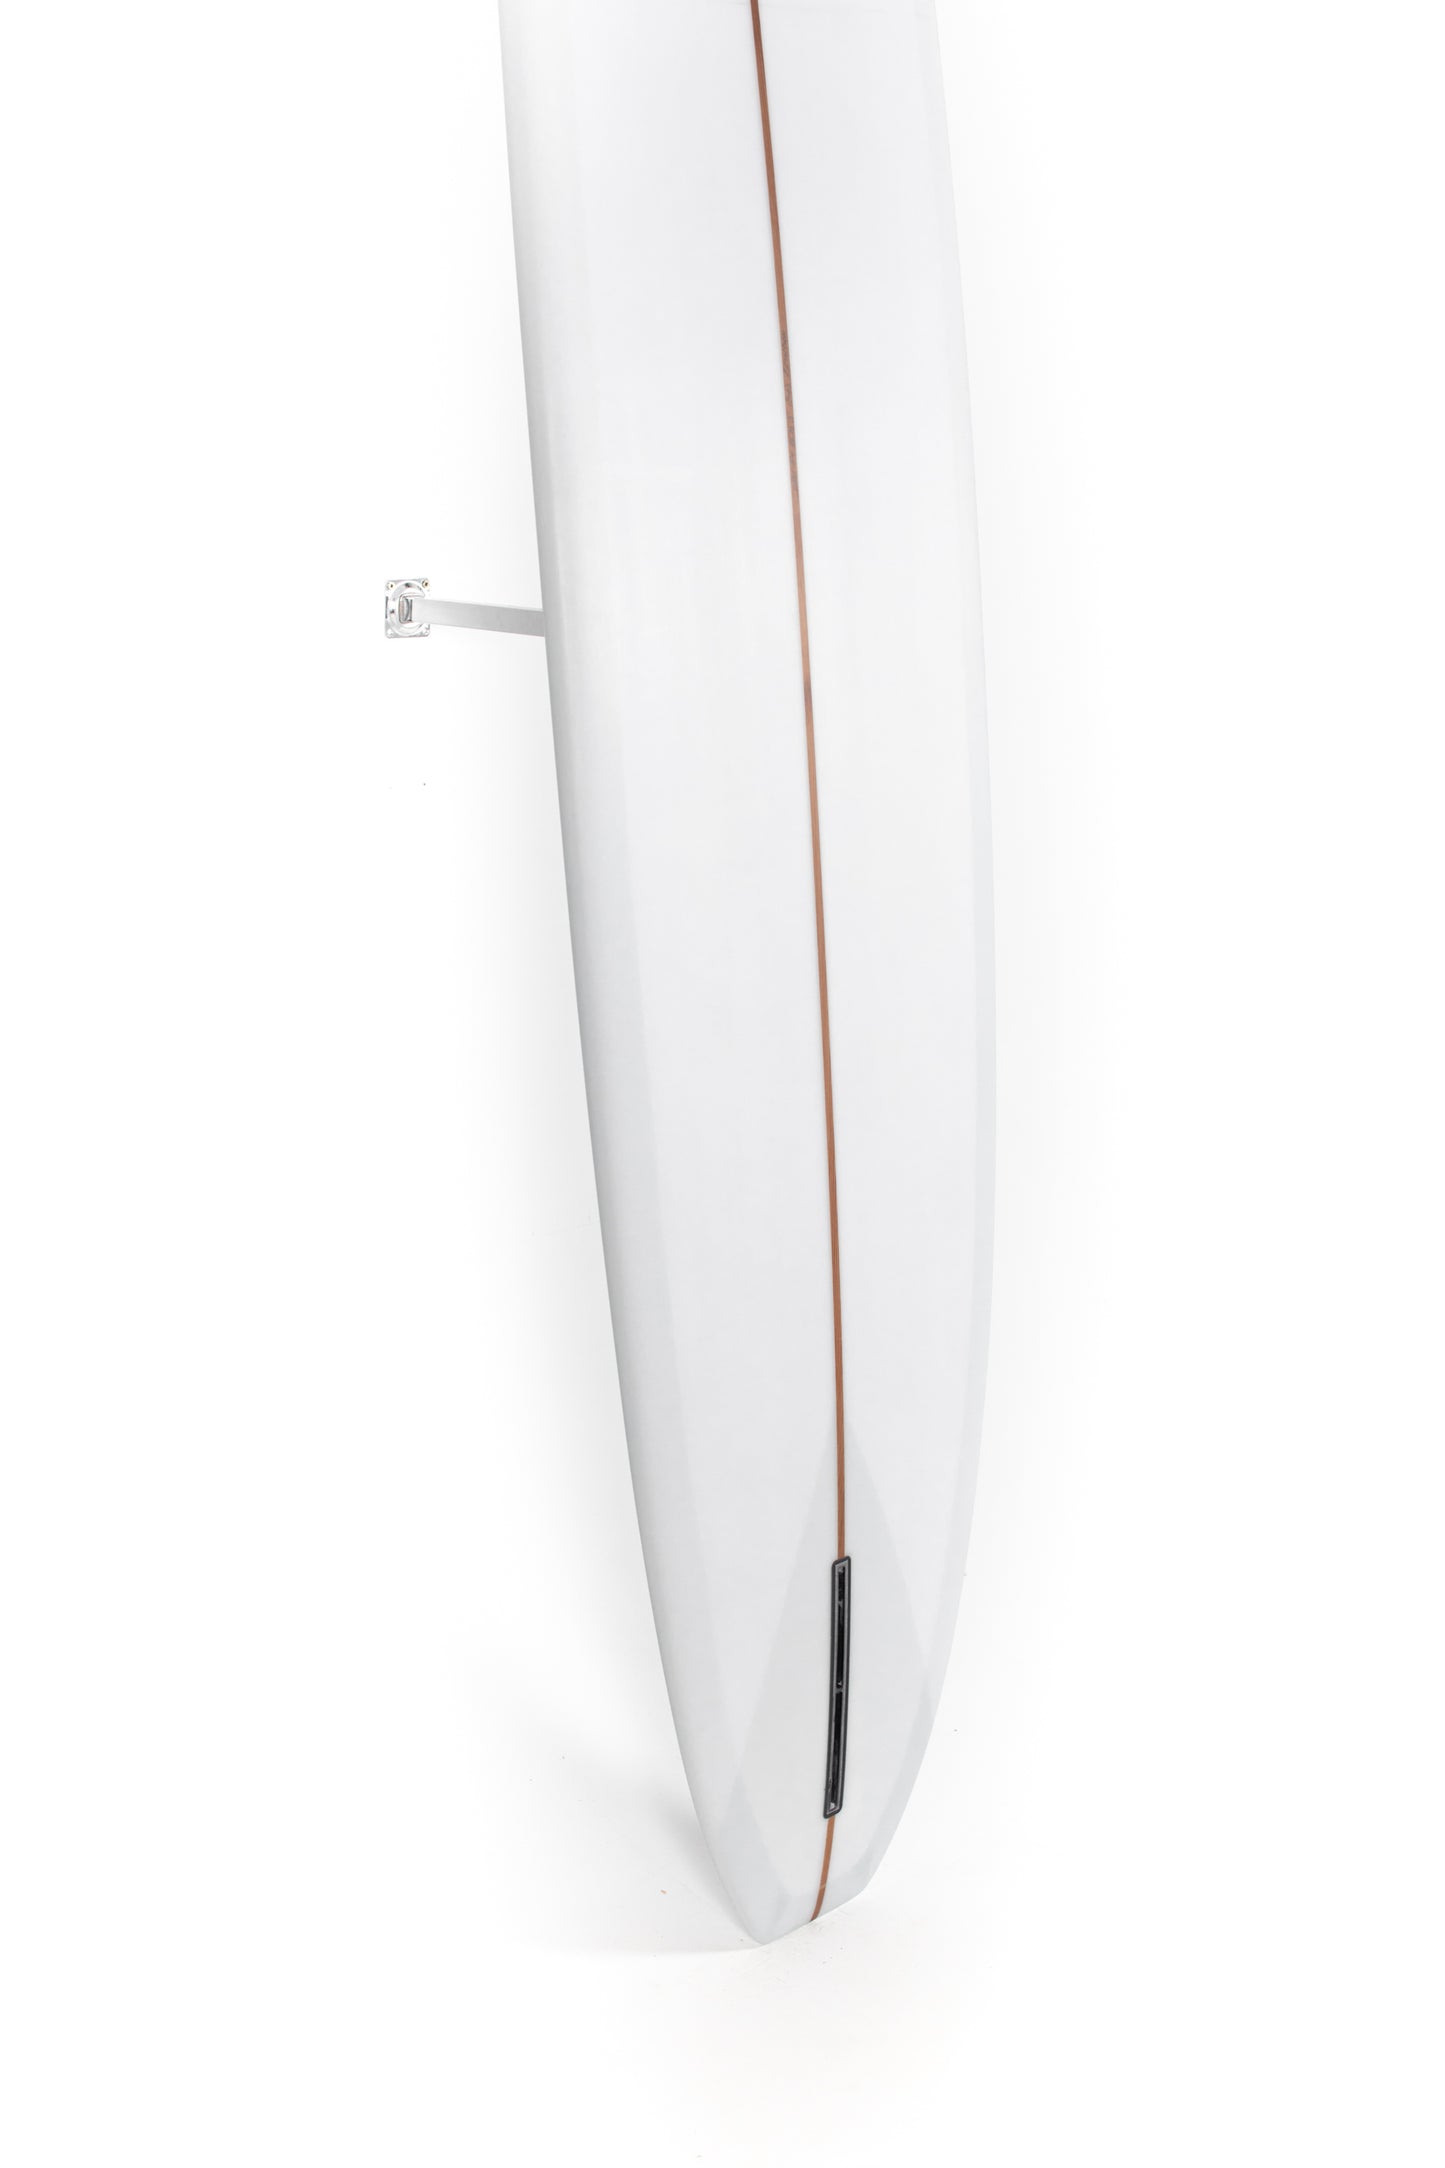 
                  
                    Pukas Surf Shop - Adrokultura Surfboards - BOB'S - 9'4" x 22 7/8 x 3 - BOBS94
                  
                